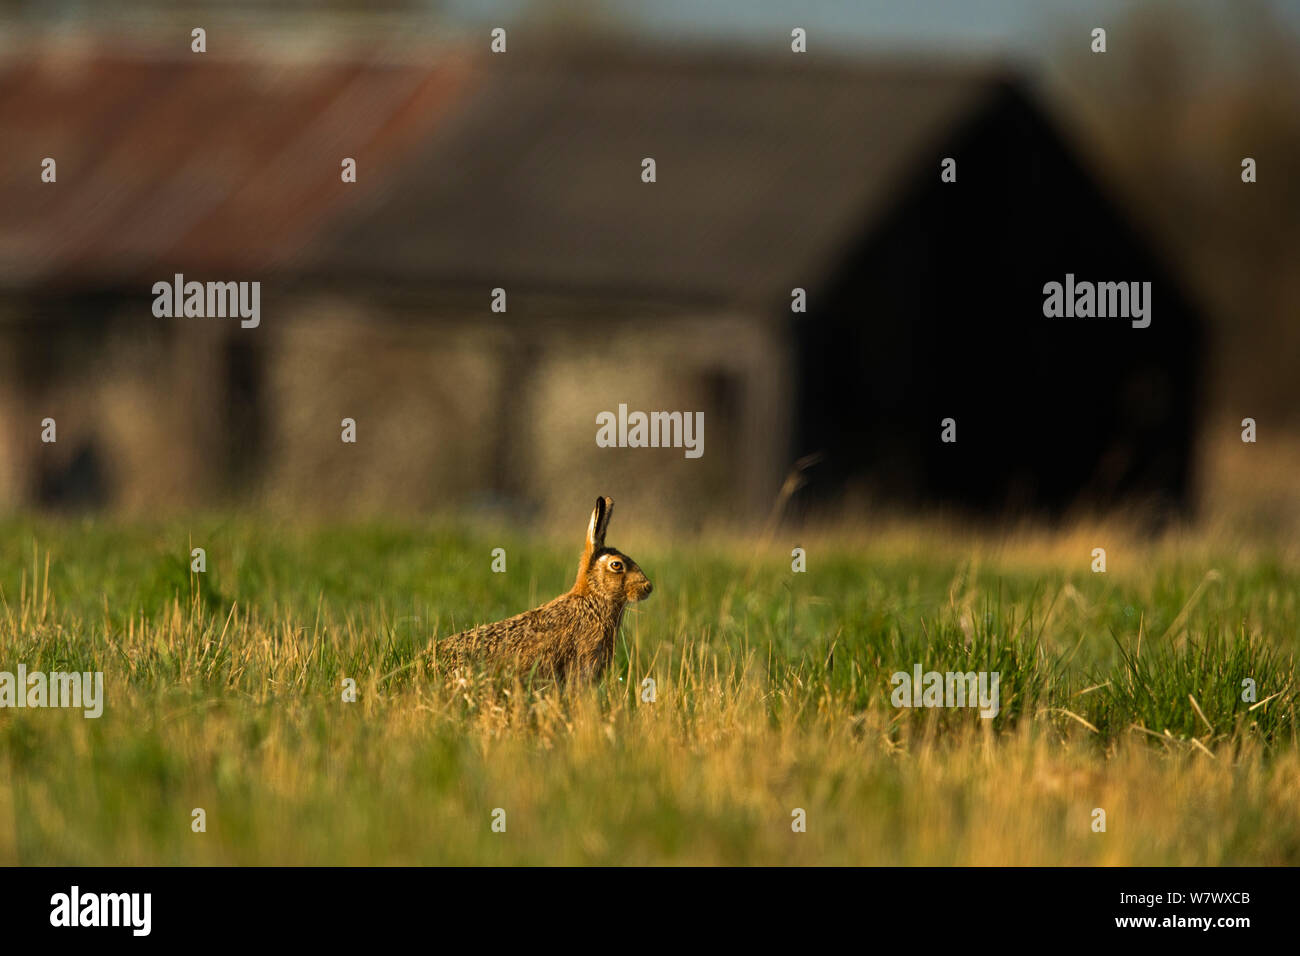 Europäische Hare (Lepus europaeus) im Grünland die alten Bauernhof, UK, März. Stockfoto